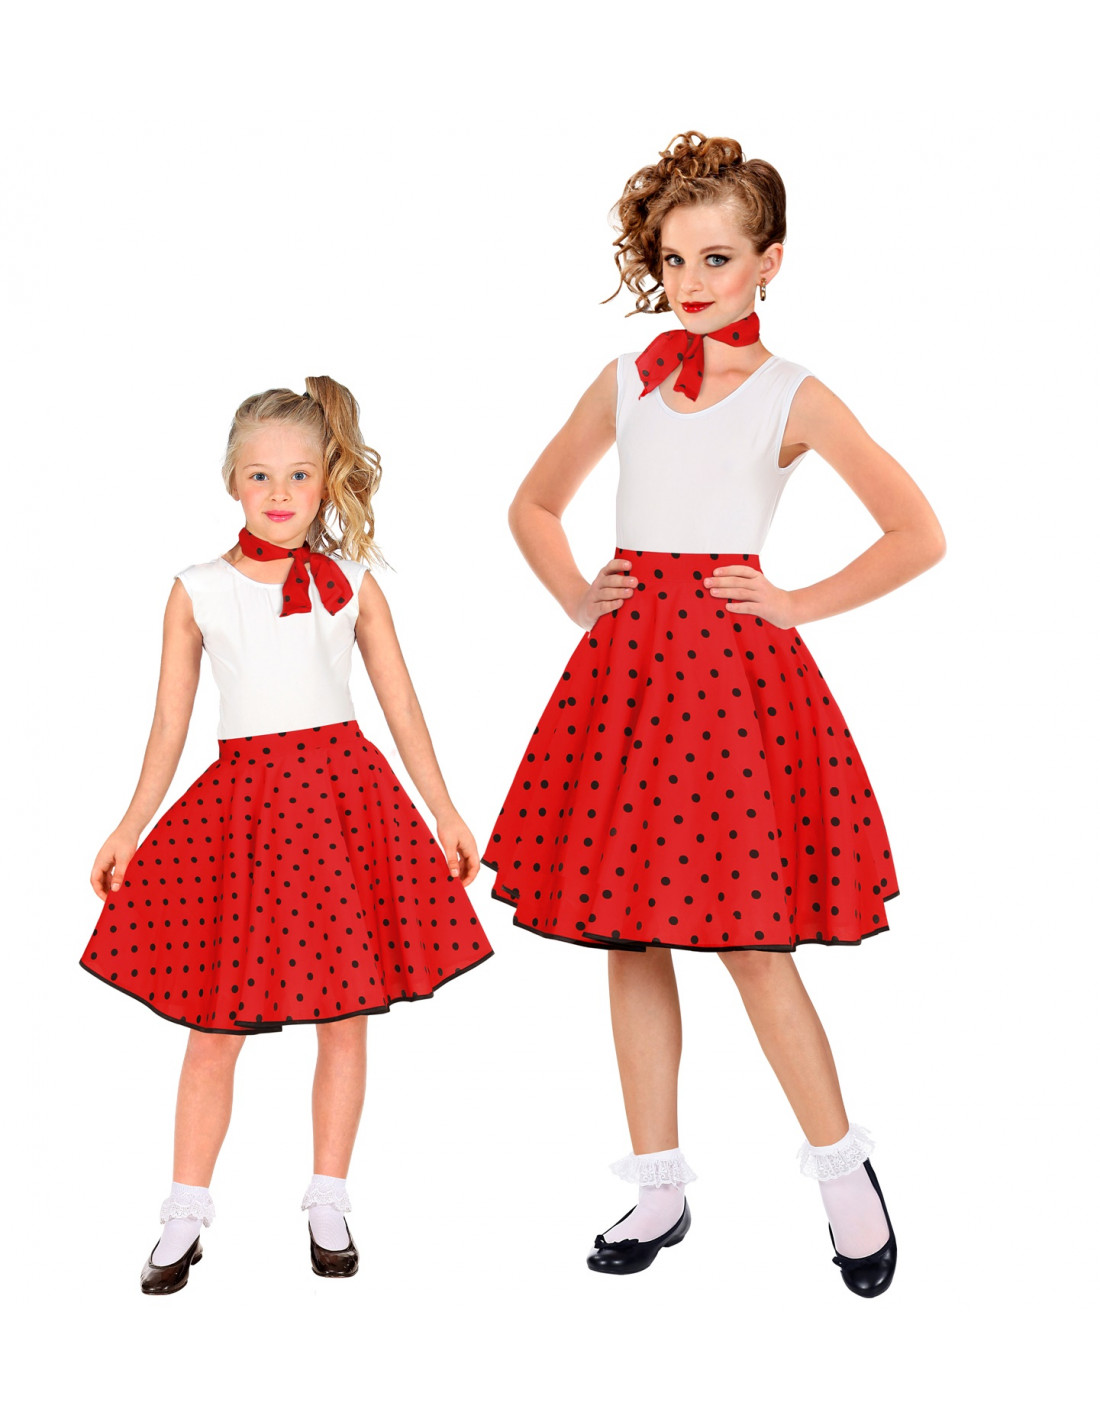 Kit o Disfraz Años 50 en varios colores para niña: Falda y Pañuelo